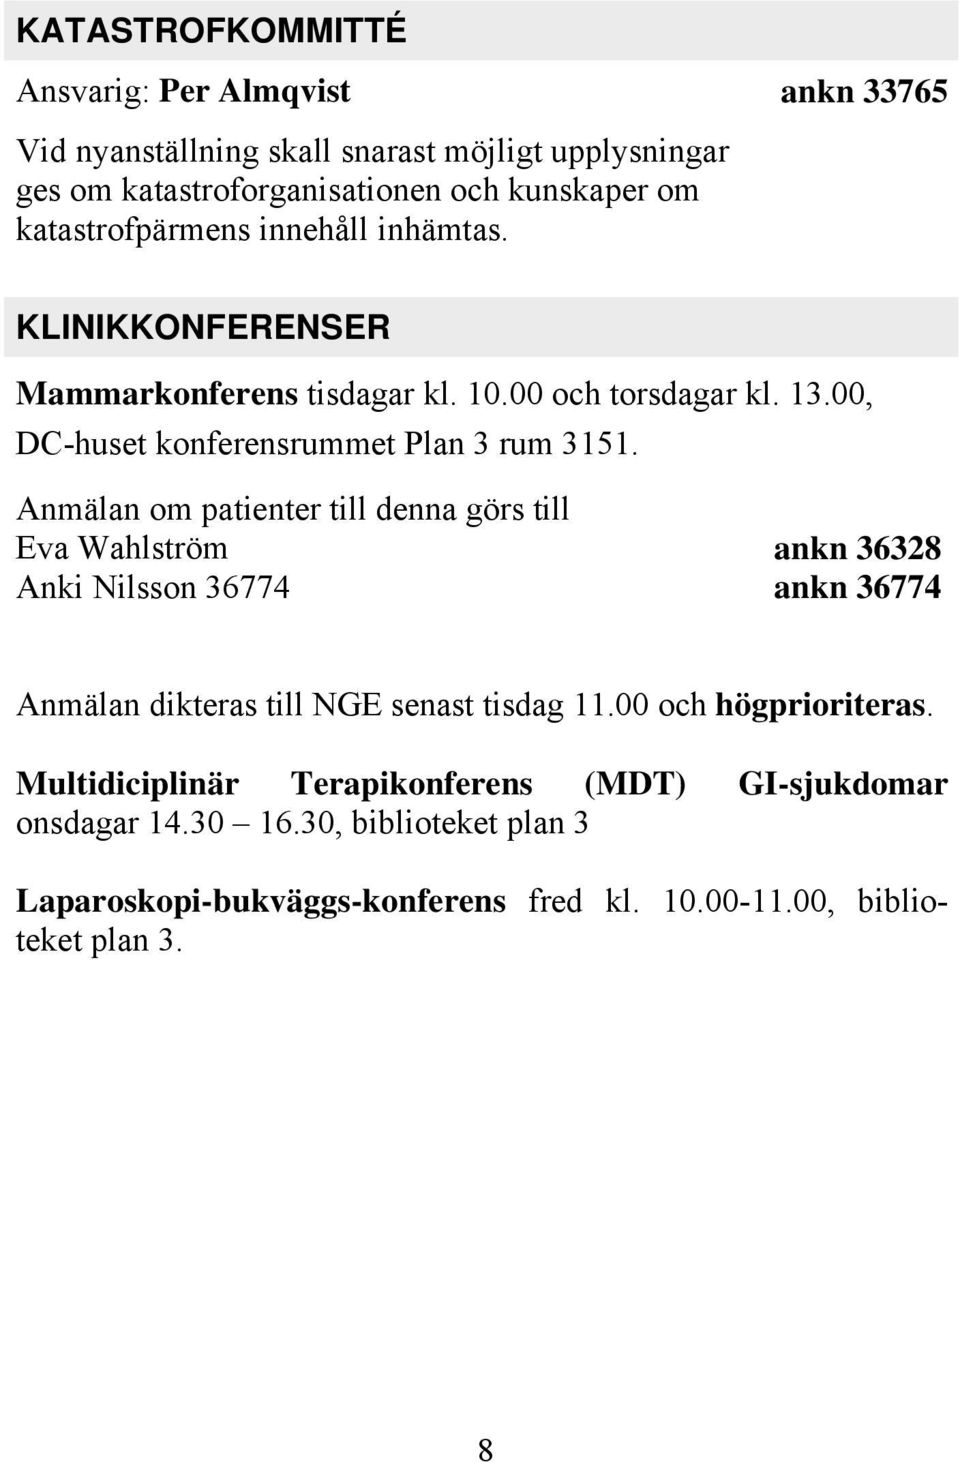 Anmälan om patienter till denna görs till Eva Wahlström Anki Nilsson 36774 ankn 36328 ankn 36774 Anmälan dikteras till NGE senast tisdag 11.